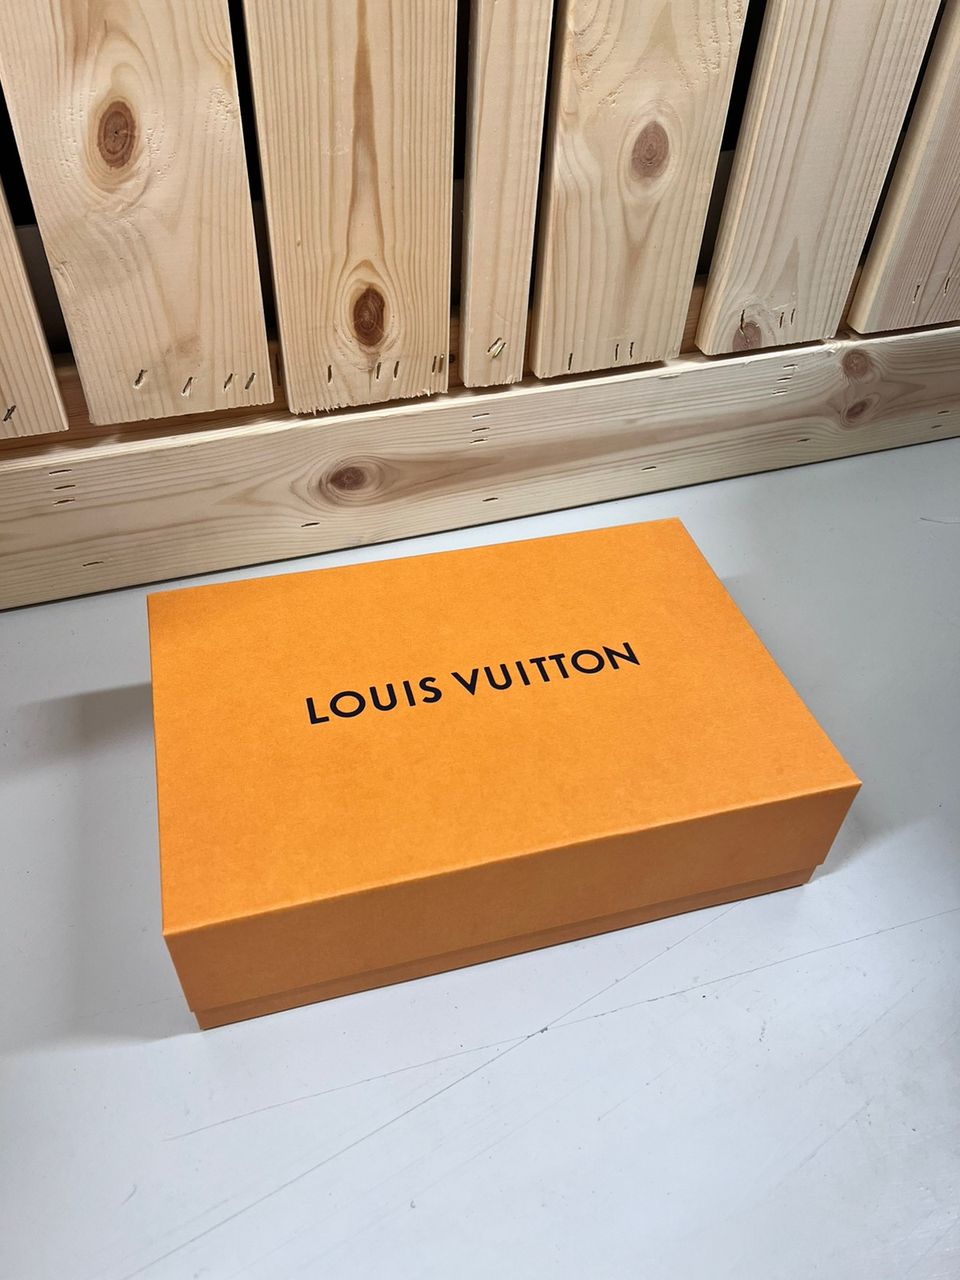 Louis Vuitton laatikko